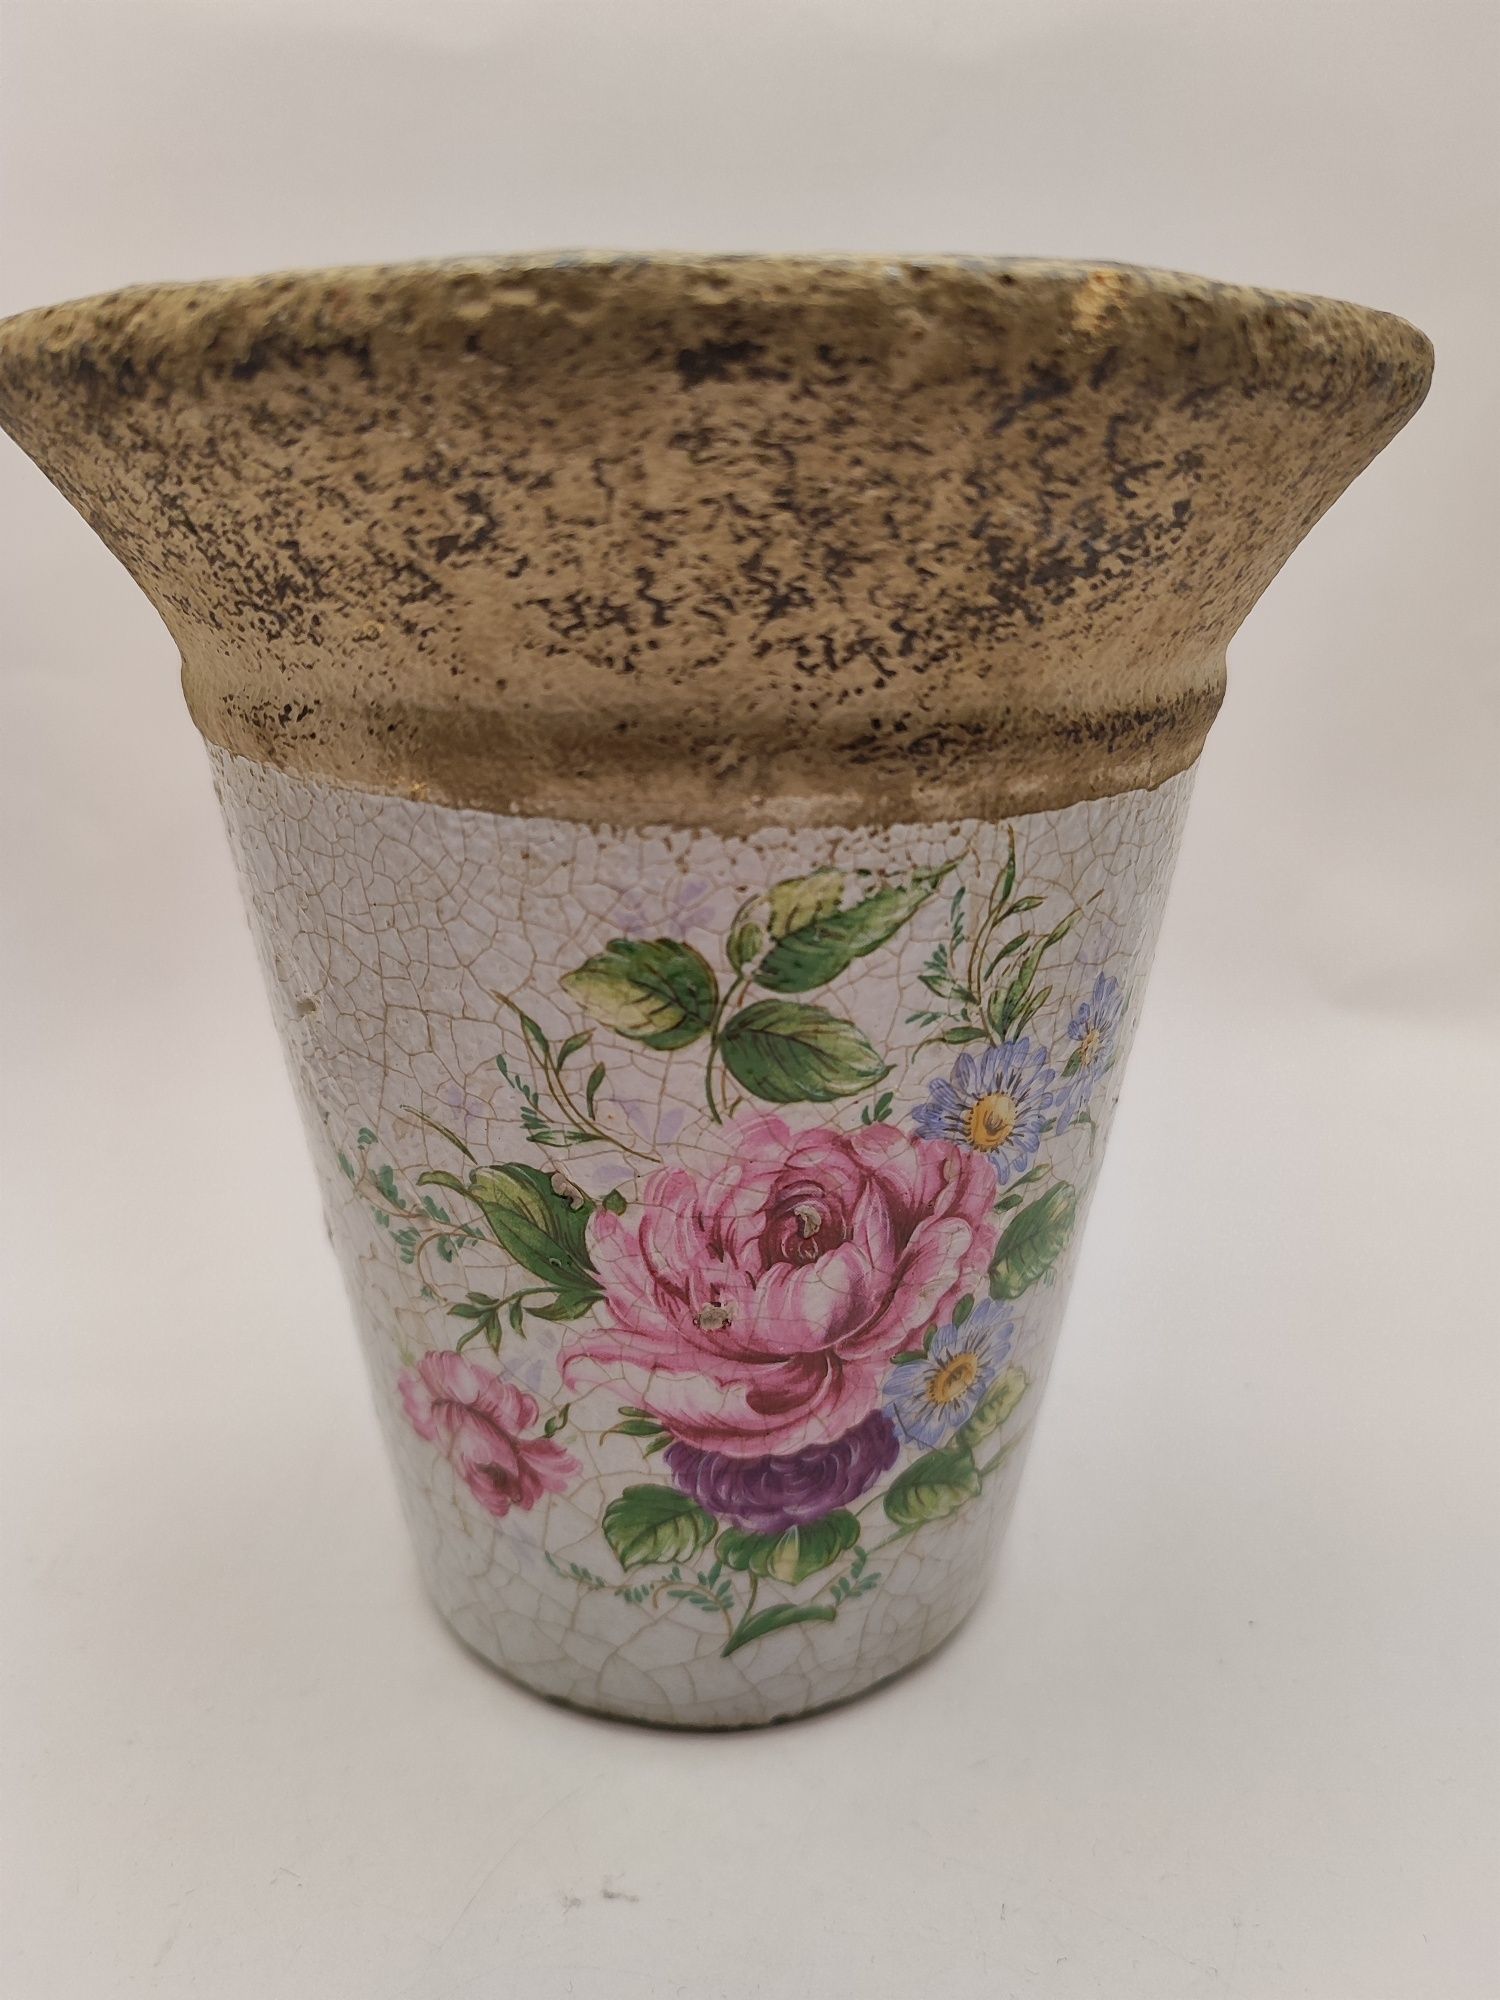 Donica osłonka doniczka ceramiczna w róże śliczna